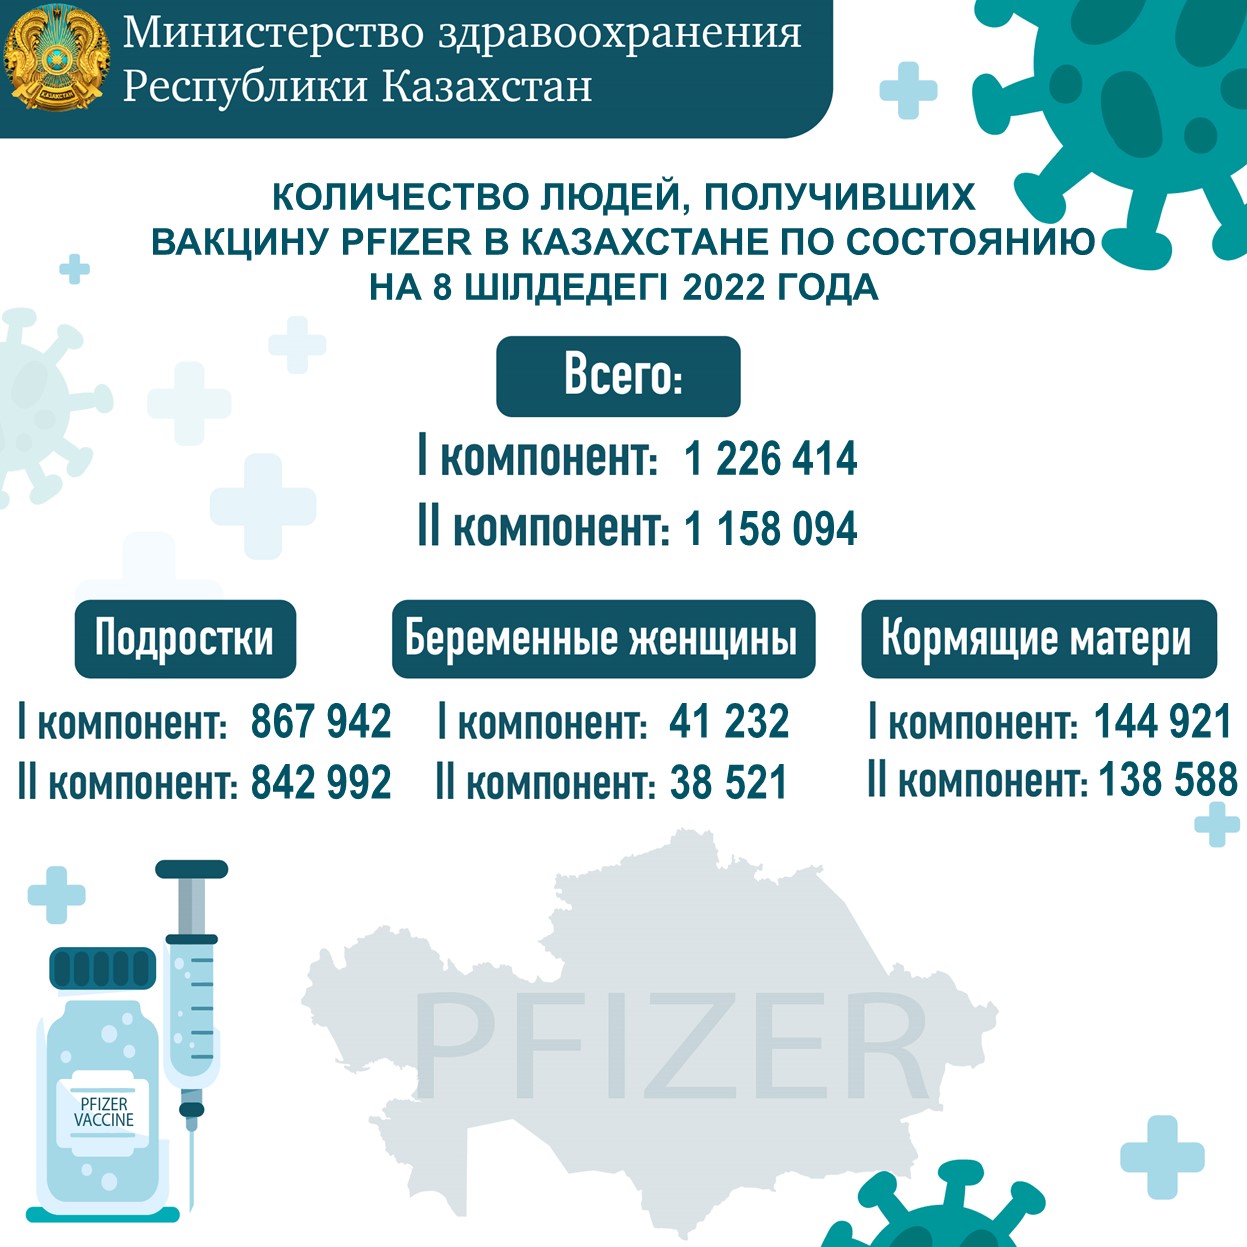 Количество людей, получивших вакцину Рfizer в Казахстане по состоянию на 8.07.2022 года